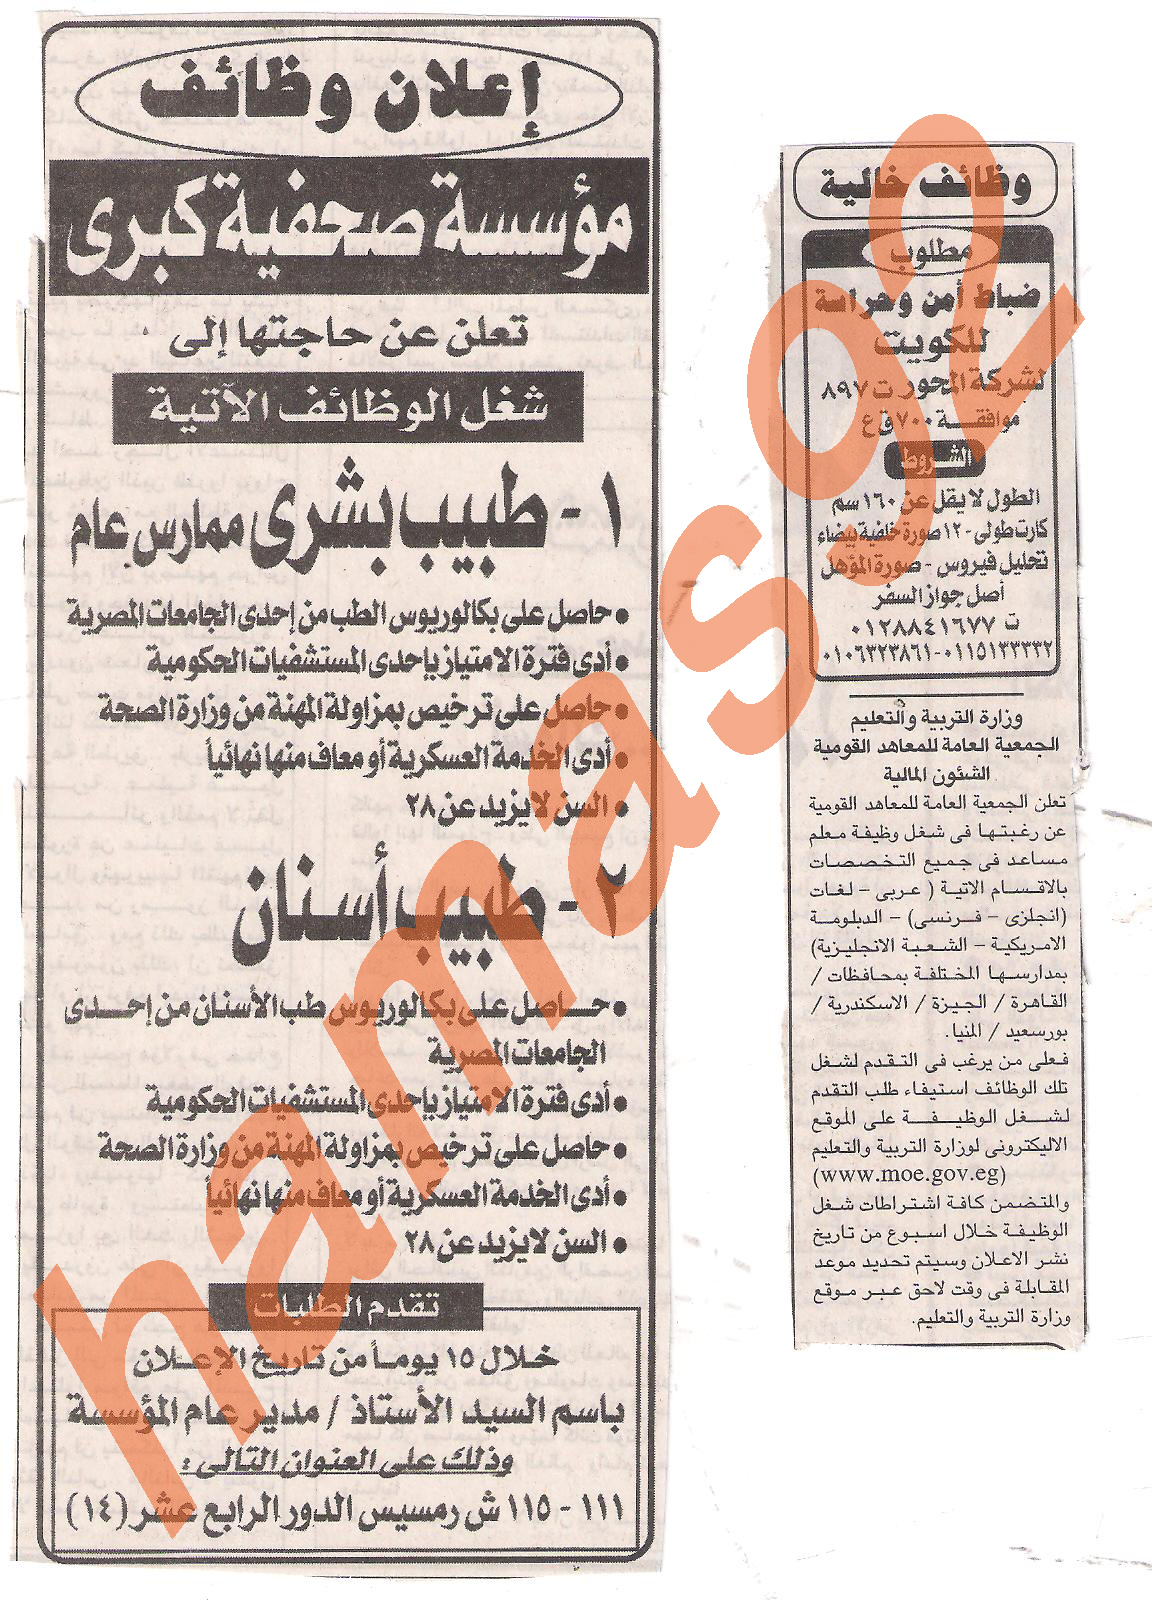  وظائف جريدة الجمهورية الخميس 28 يوليو 2011   Picture